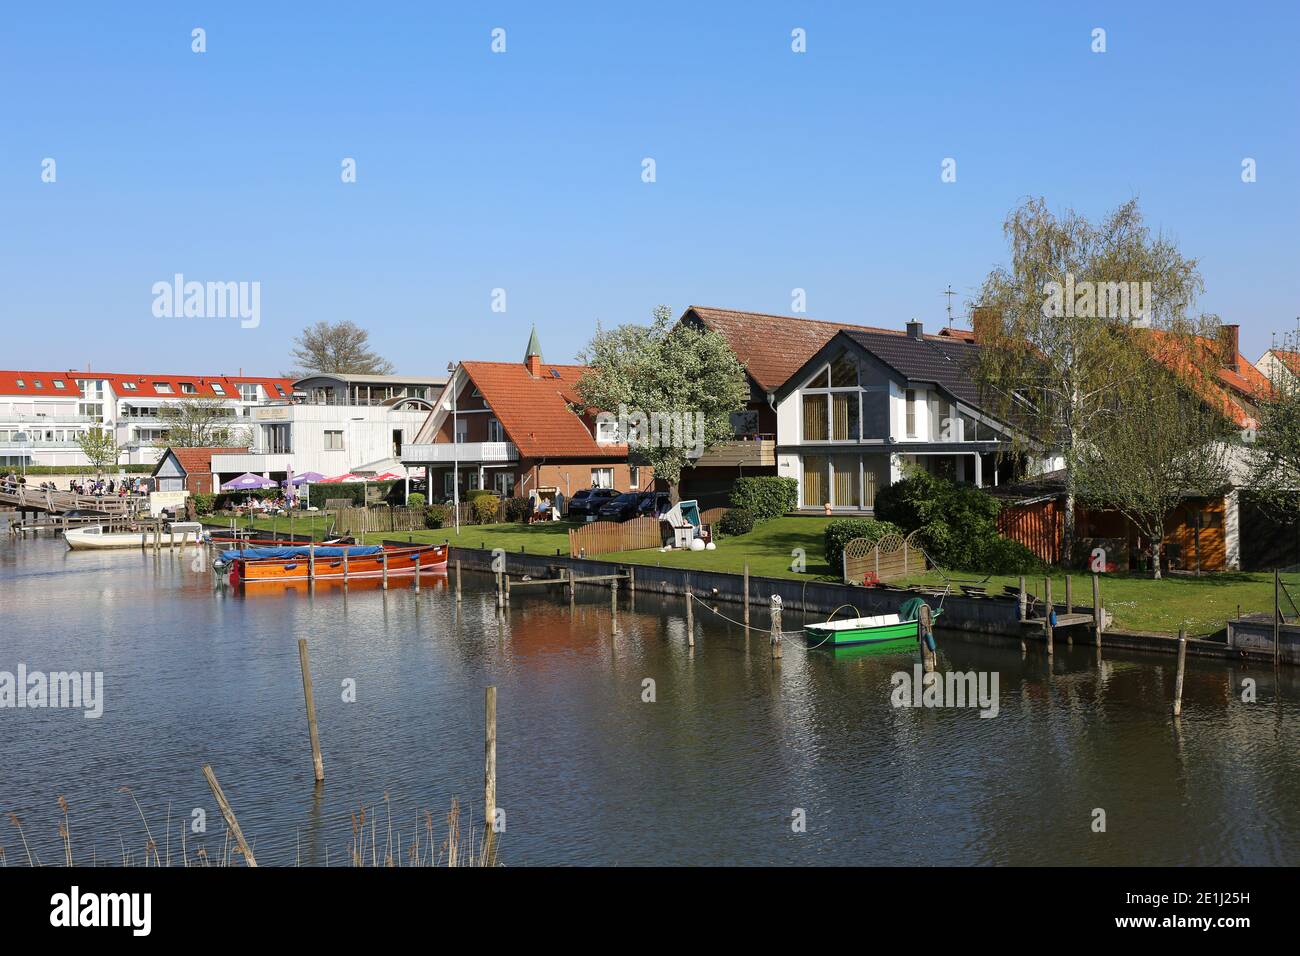 STEINHUDER MEER, GERMANIA-APRILE 19: Belle case con molo e barche presso il lago.aprile 19,2019 a Steinhuder Meer, Germania. Foto Stock